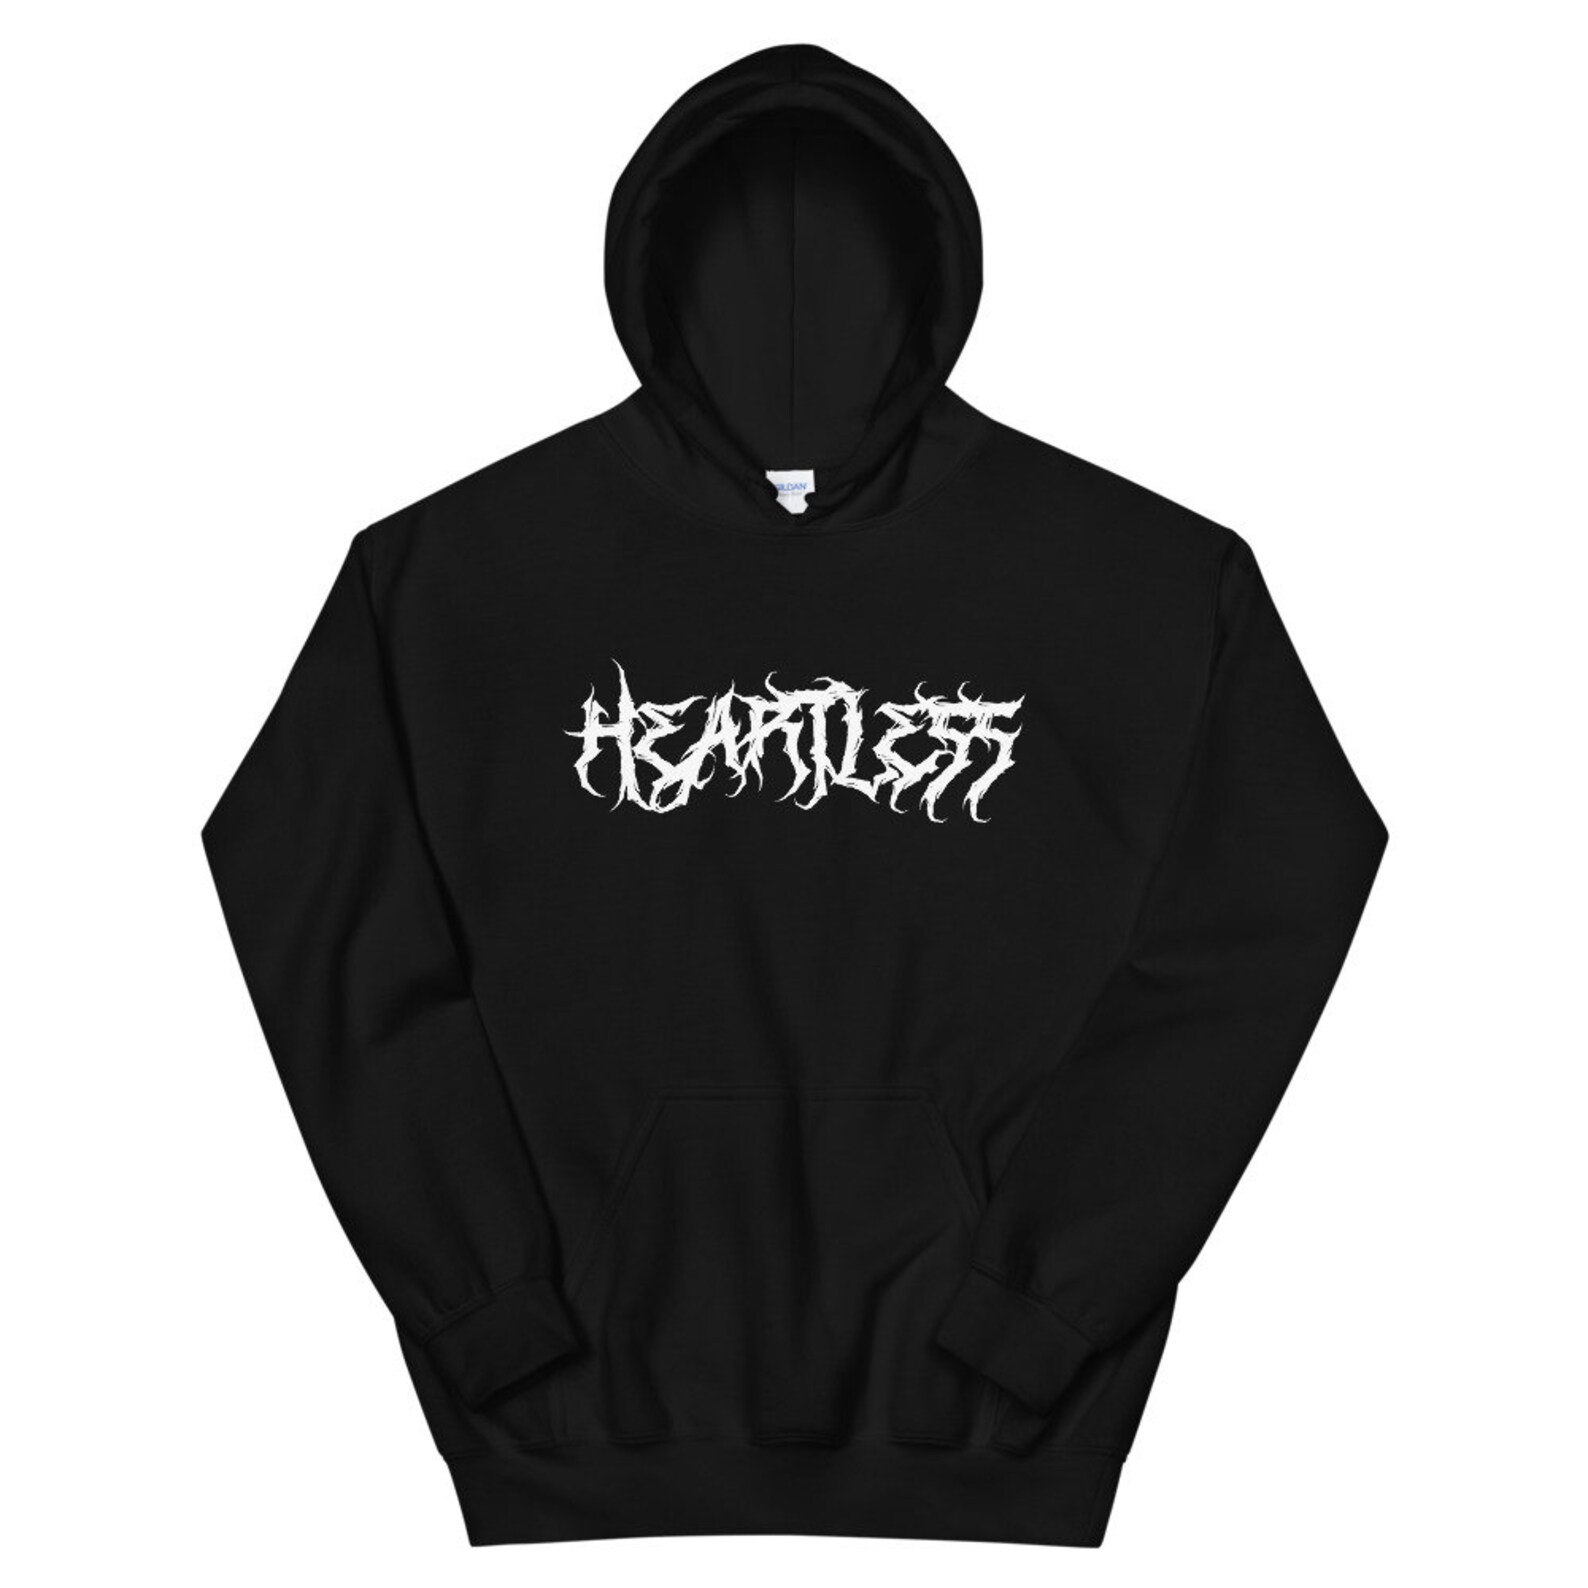 Heartless Hoodie - Etsy